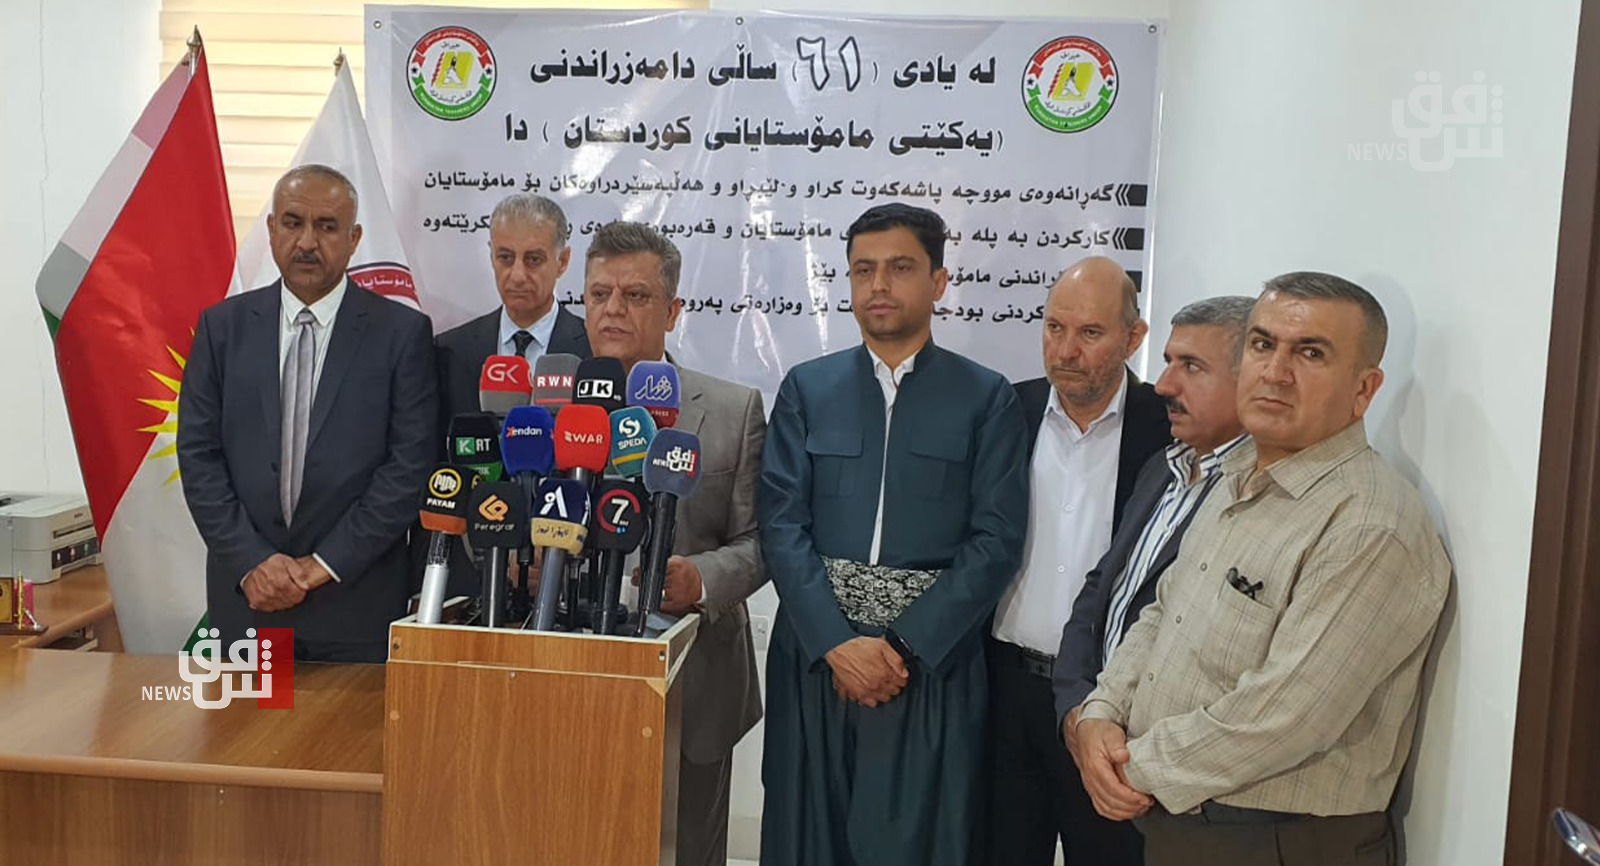 اتحاد معلمي السليمانية يرد على تربية كوردستان: اللامبالاة ستؤدي إلى شلّ قطاع التعليم